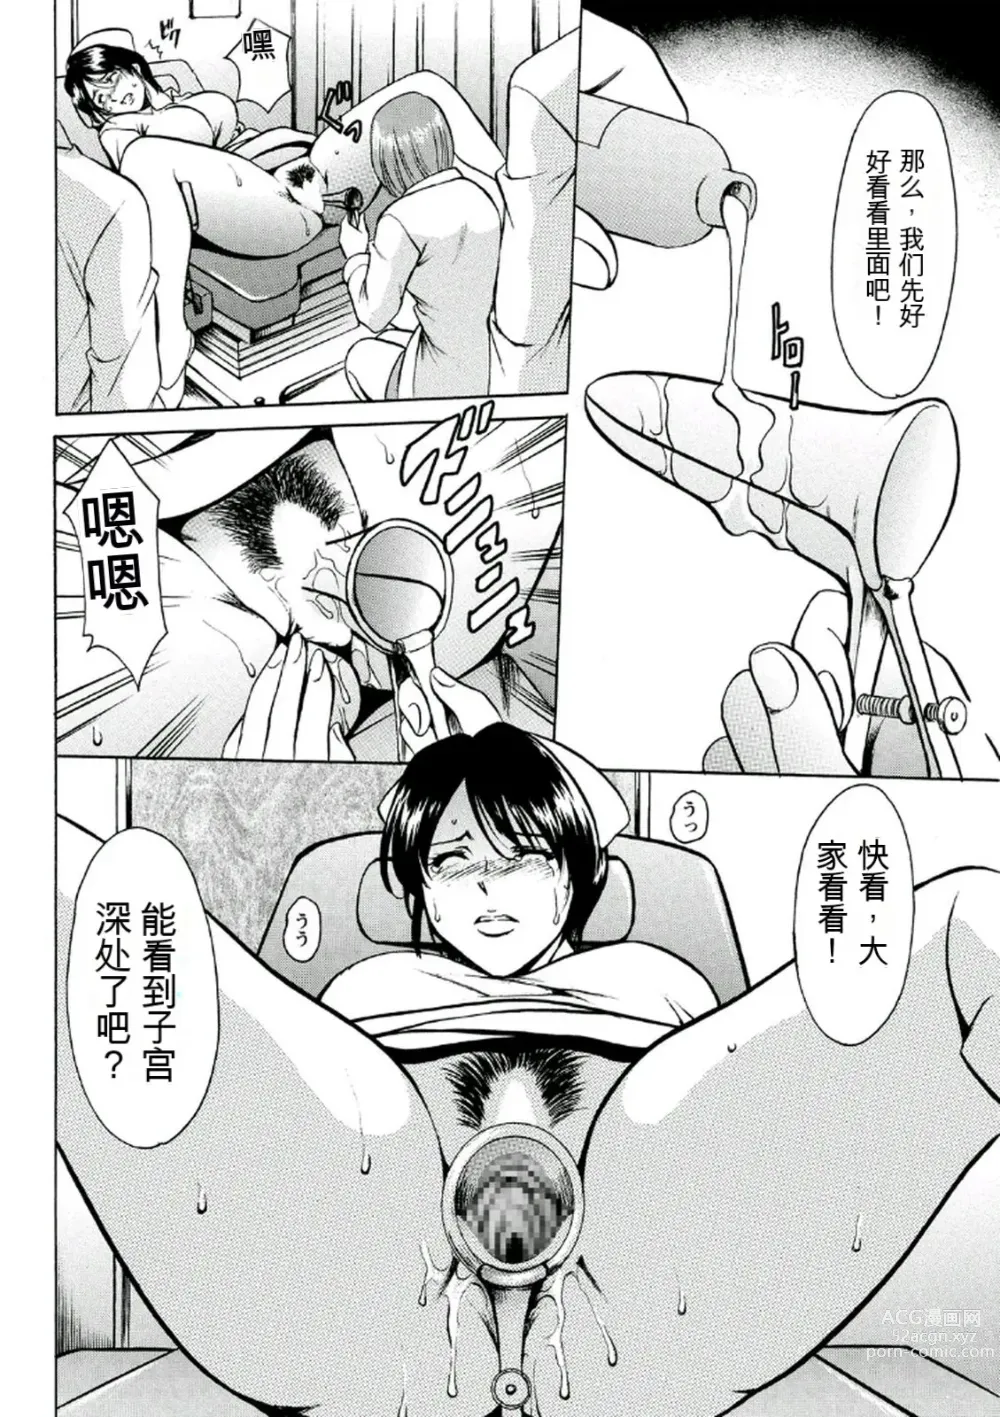 Page 34 of manga Chijoku Byoutou -Hakui no Datenshi-